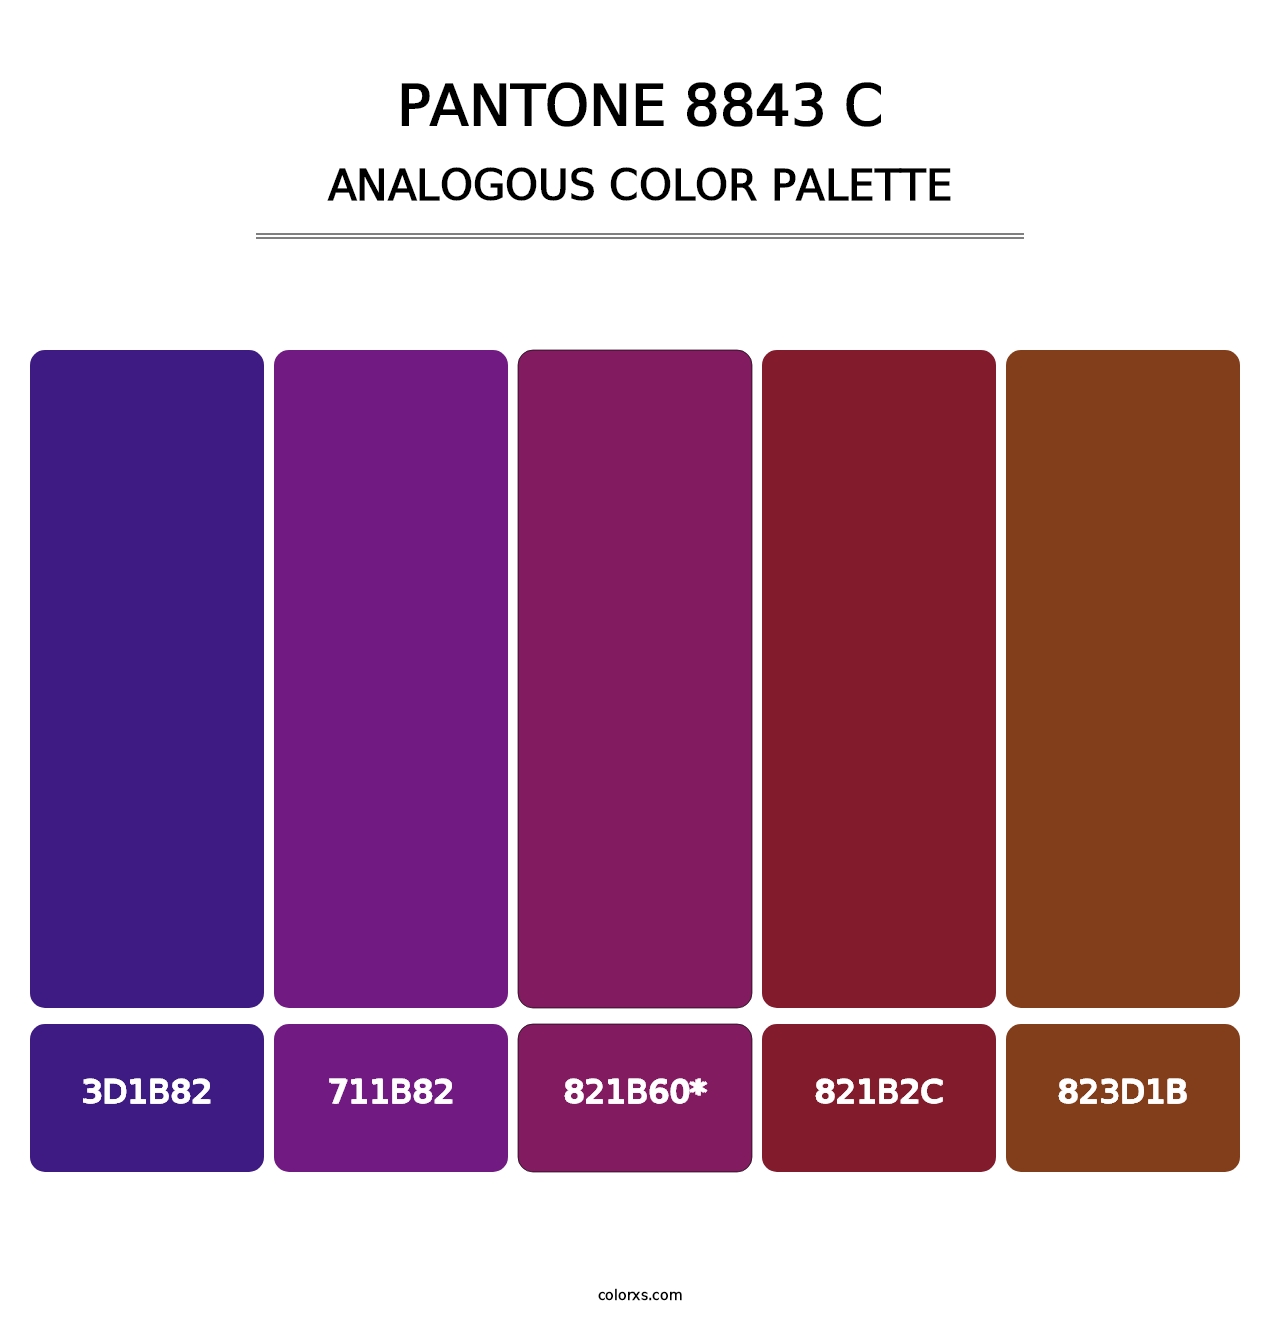 PANTONE 8843 C - Analogous Color Palette